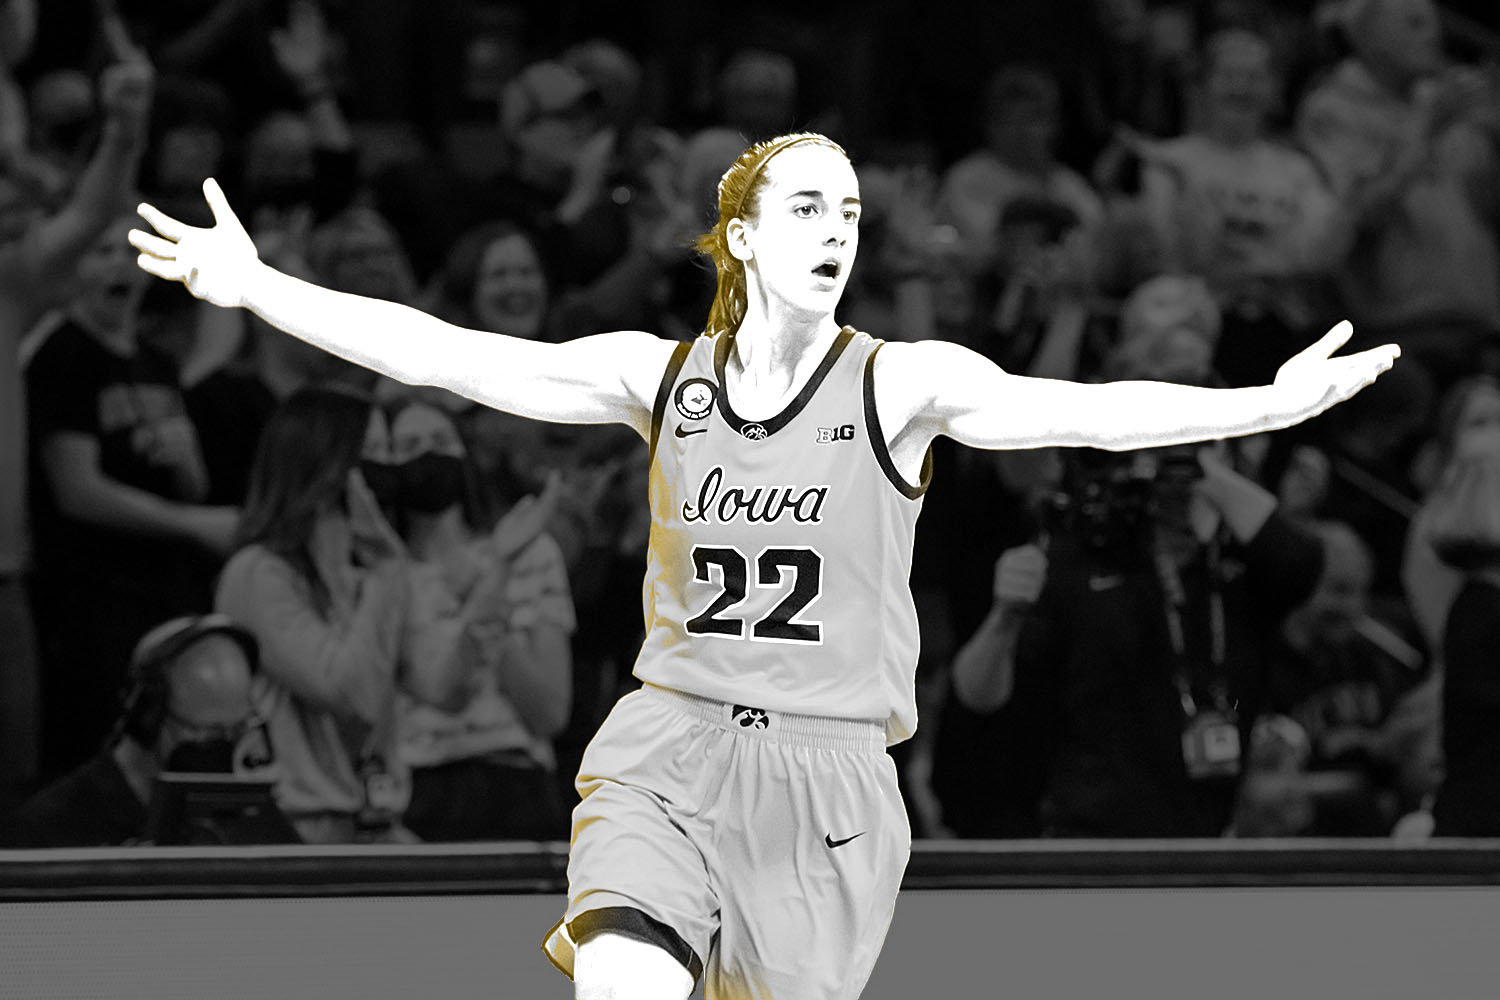 State Farm announces partnership with Iowa women's basketball star Caitlin  Clark